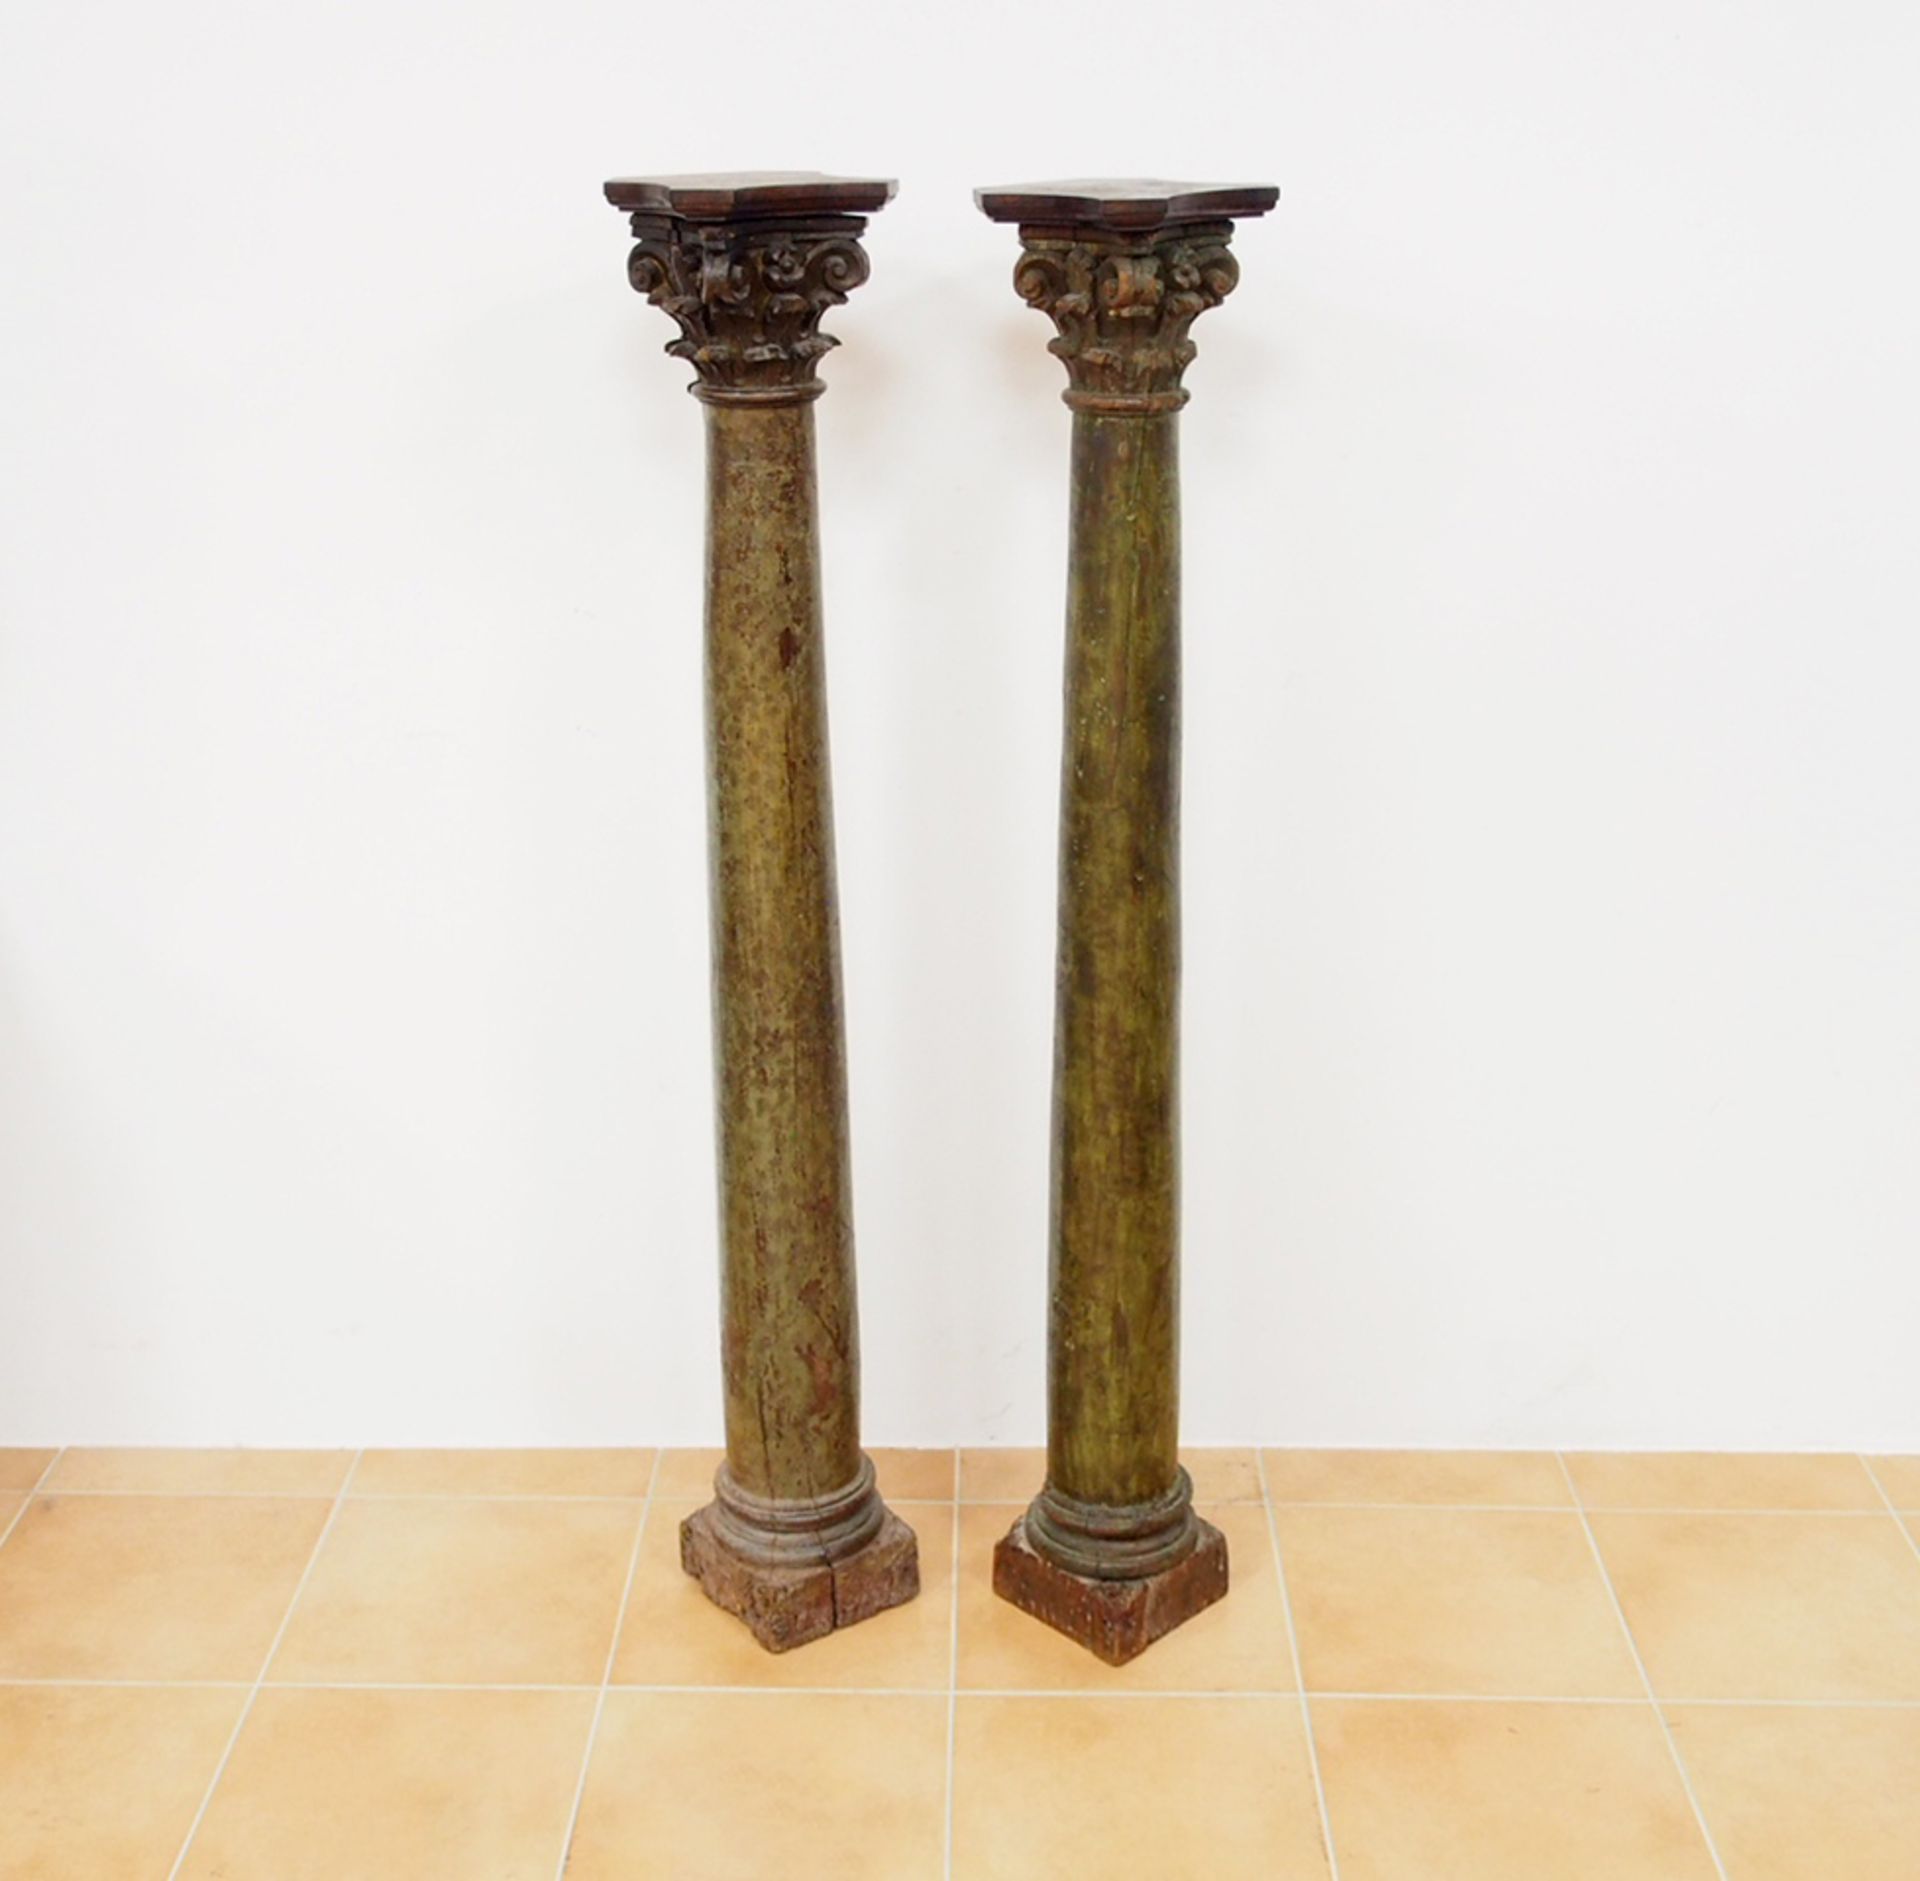 Paar Säulen mit korinthisierenden Kapitellen